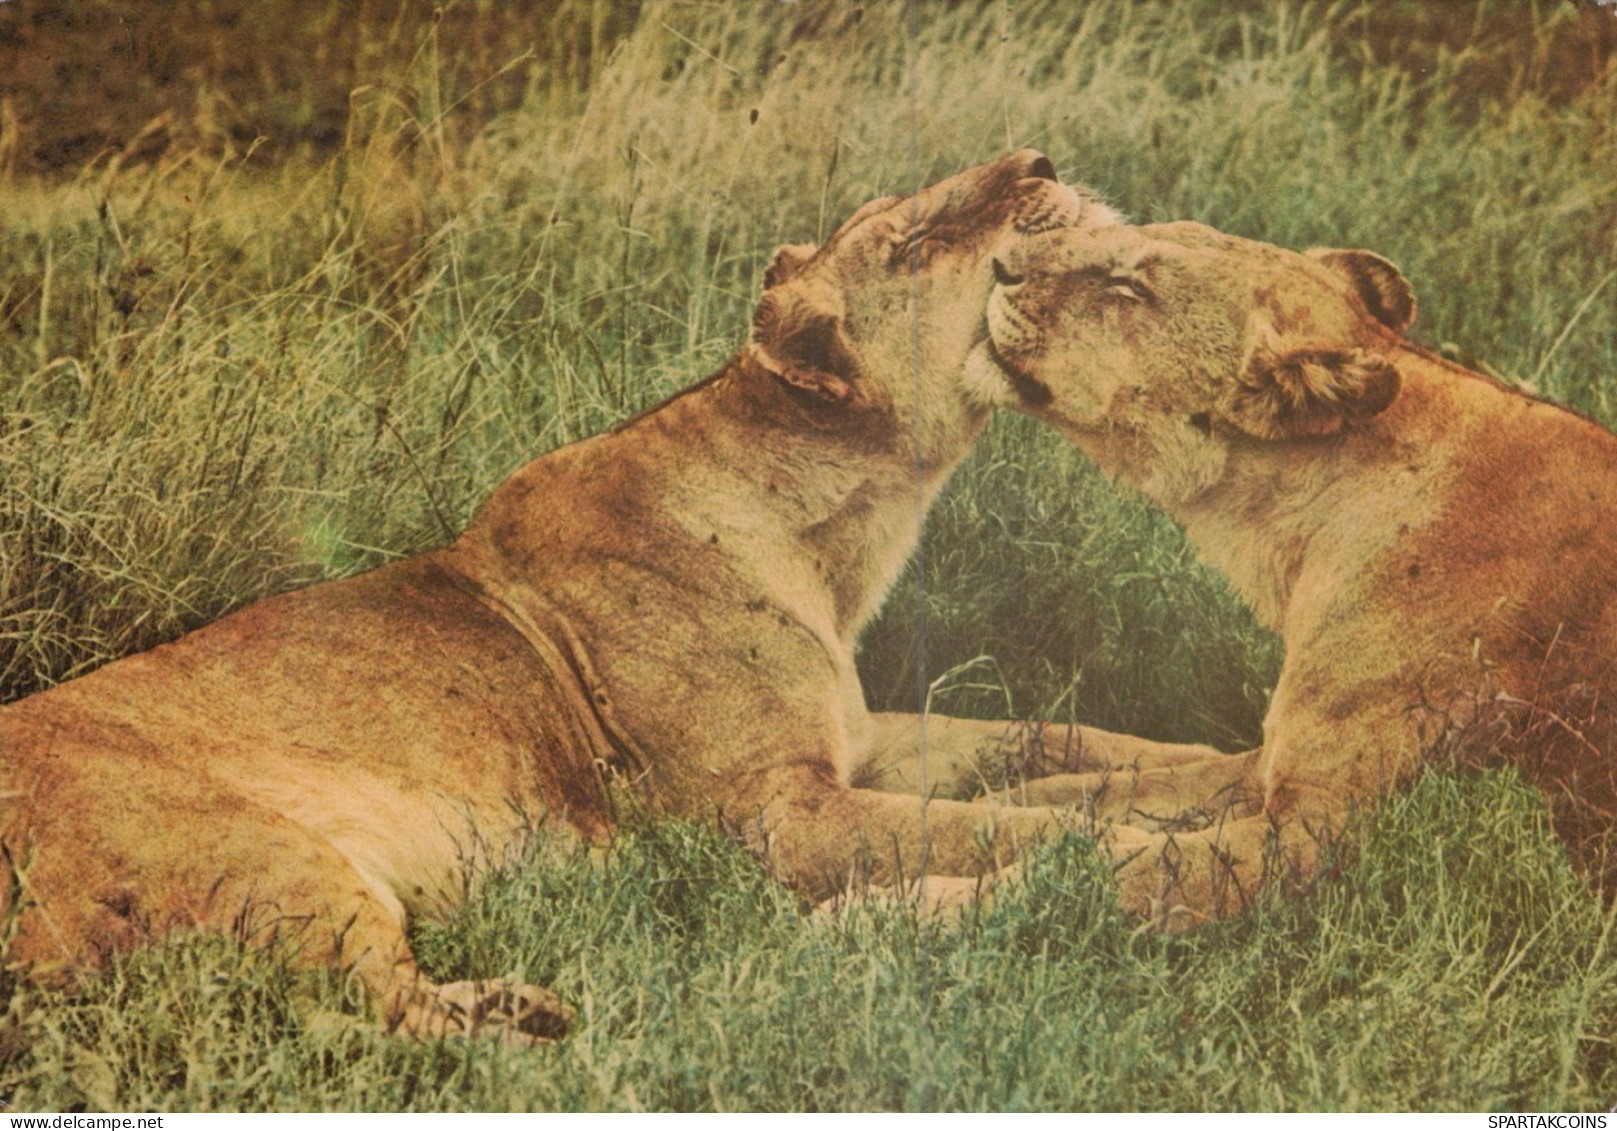 LEONE GRANDE GATTO Animale Vintage Cartolina CPSM #PAM005.IT - Lions